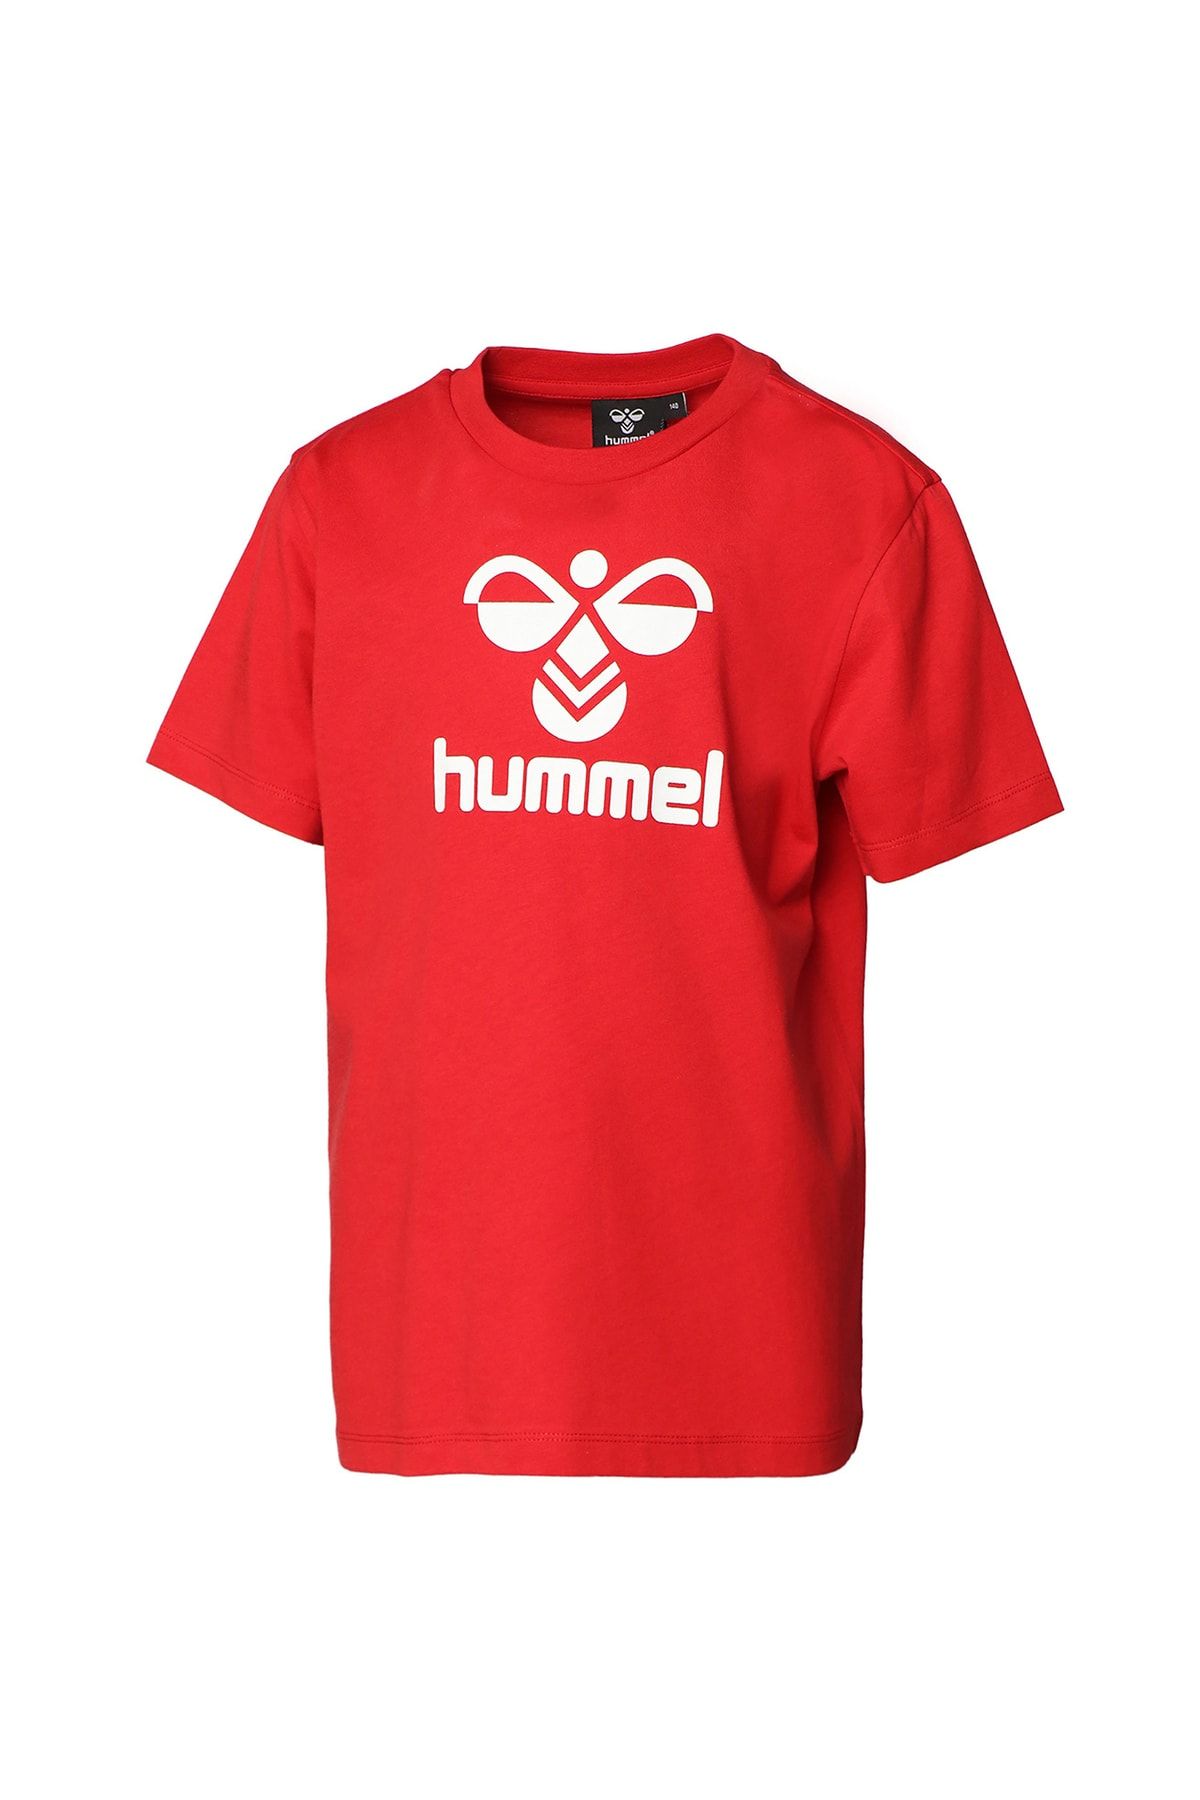 hummel Baskılı Kırmızı Erkek Çocuk T-shirt 911653-2220 Hmllauren T-shırt S/s